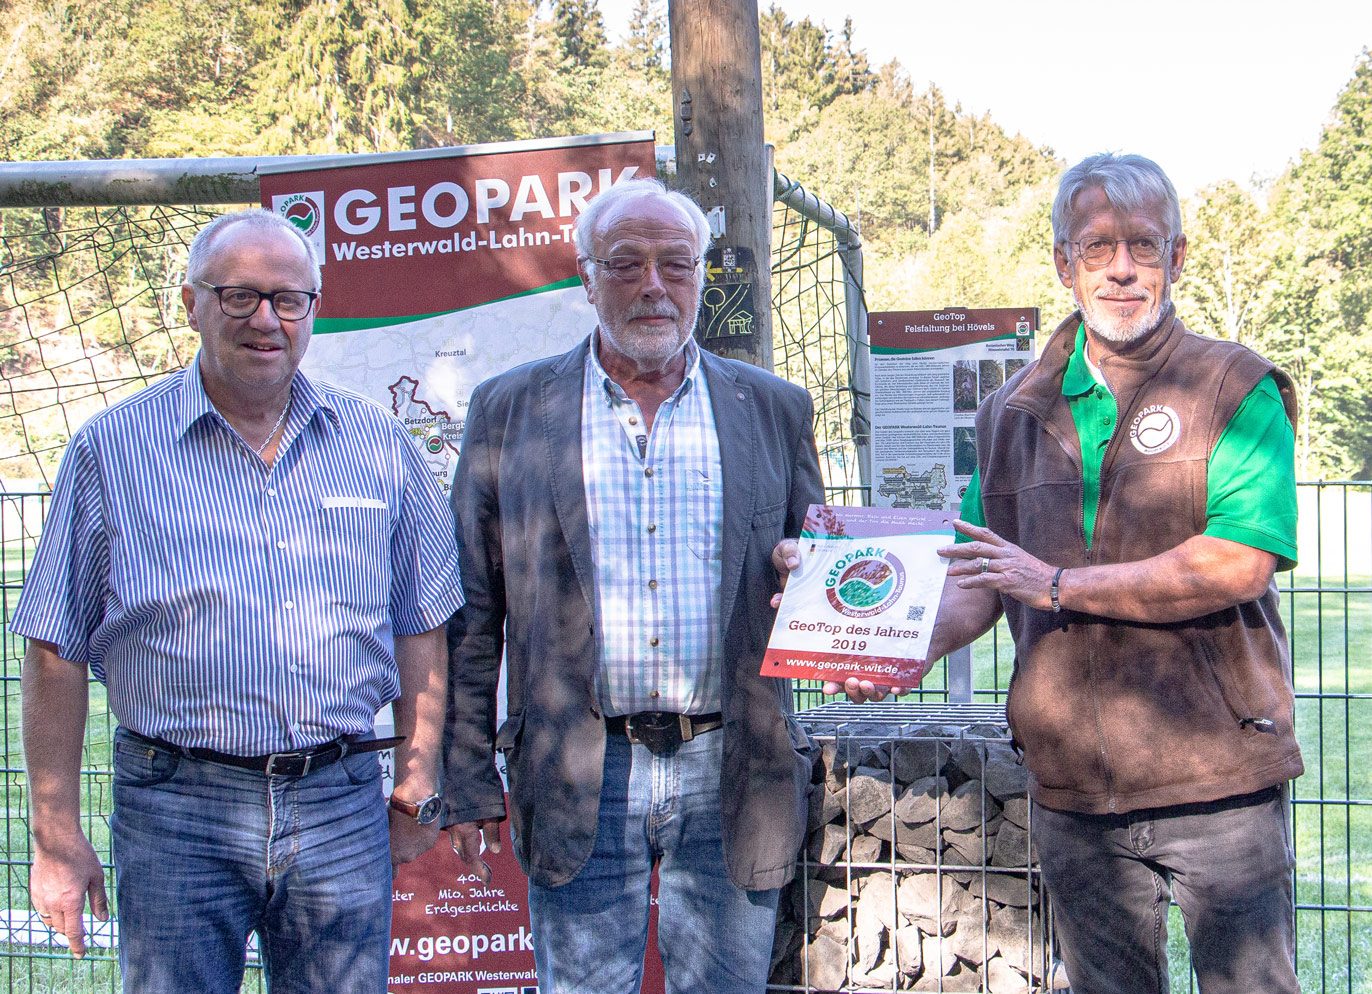 Nahmen die Auszeichnung als „Geotop des Jahres“ offiziell von Knut Rehn (rechts) vom Geopark Westerwald-Lahn-Taunus entgegen: Landrat Dr. Peter Enders (links) und Reinhold Bröhl, Beigeordneter der Verbandsgemeinde Wissen.